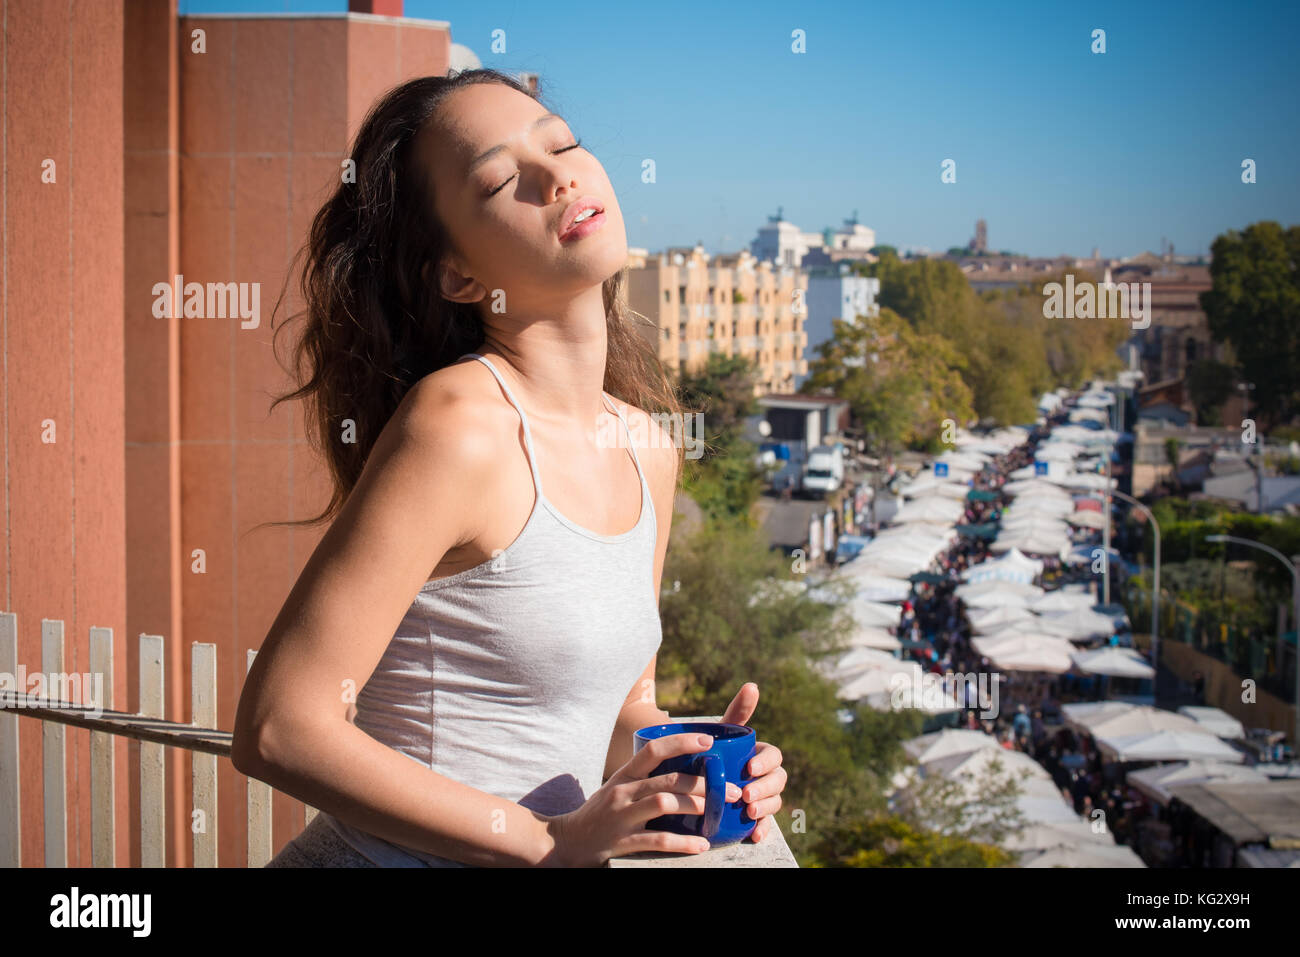 Giovani asiatici teen donna sul balcone ritratto chiuso gli occhi blu alla luce del sole la tazza nelle mani di background urbano lo stile di vita della città Foto Stock